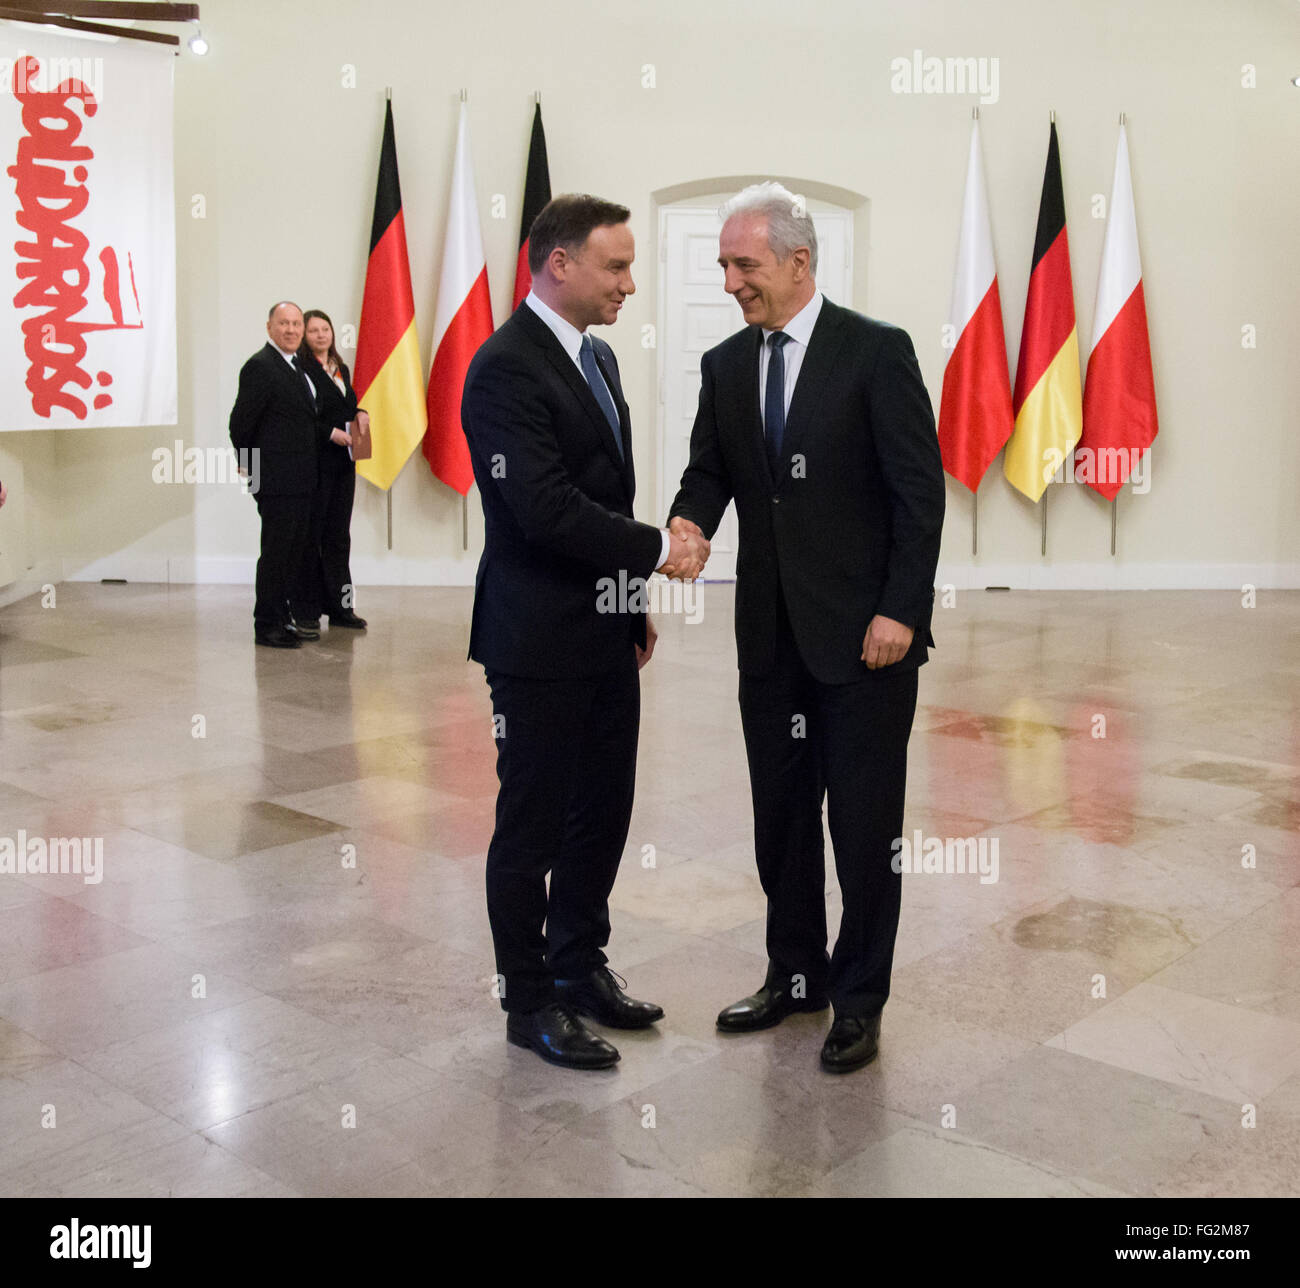 Le président polonais Andrzej Duda (L) se félicite que le président du Bundesrat allemand Stanislaw Tillich (R) dans le palais présidentiel le 17 février 2016 à Varsovie, Pologne. Banque D'Images